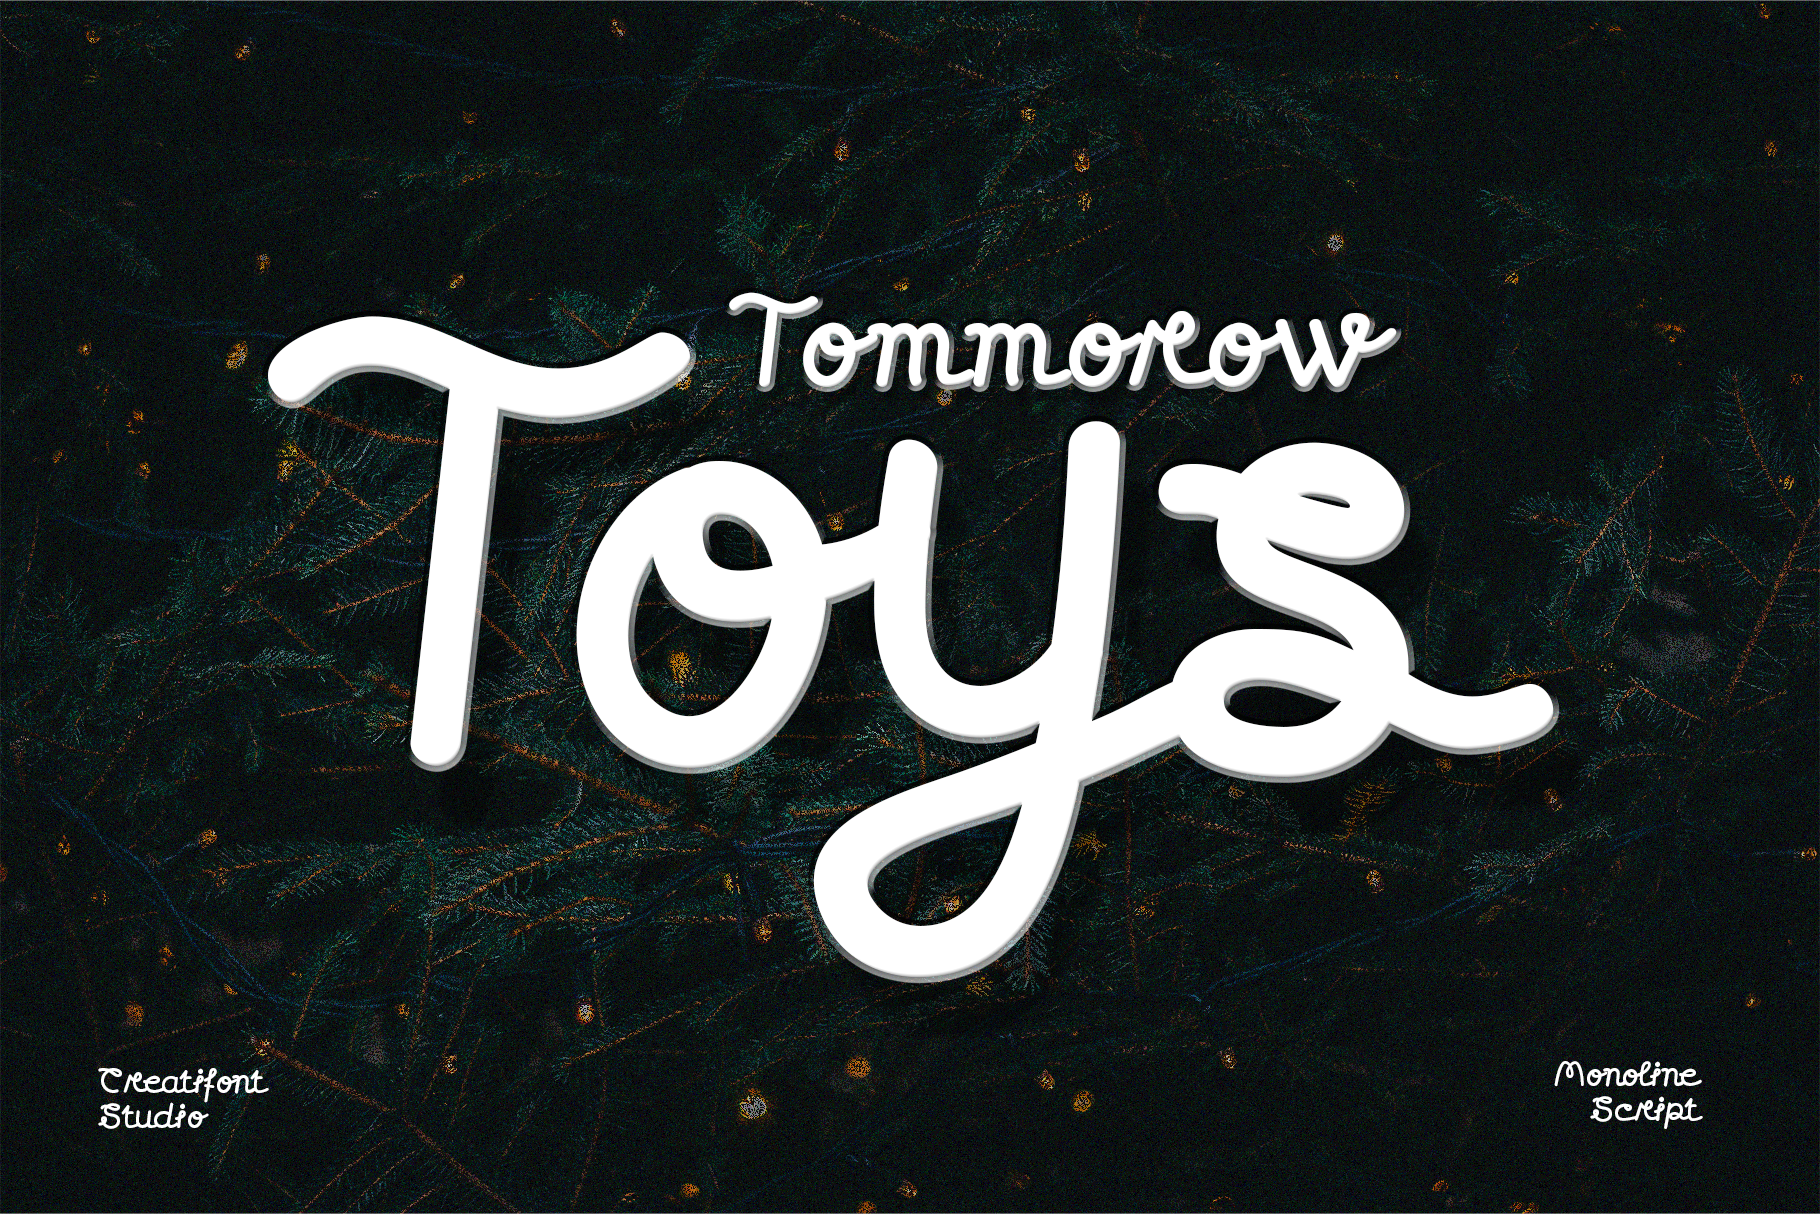 CF Tommorow Toys Demo